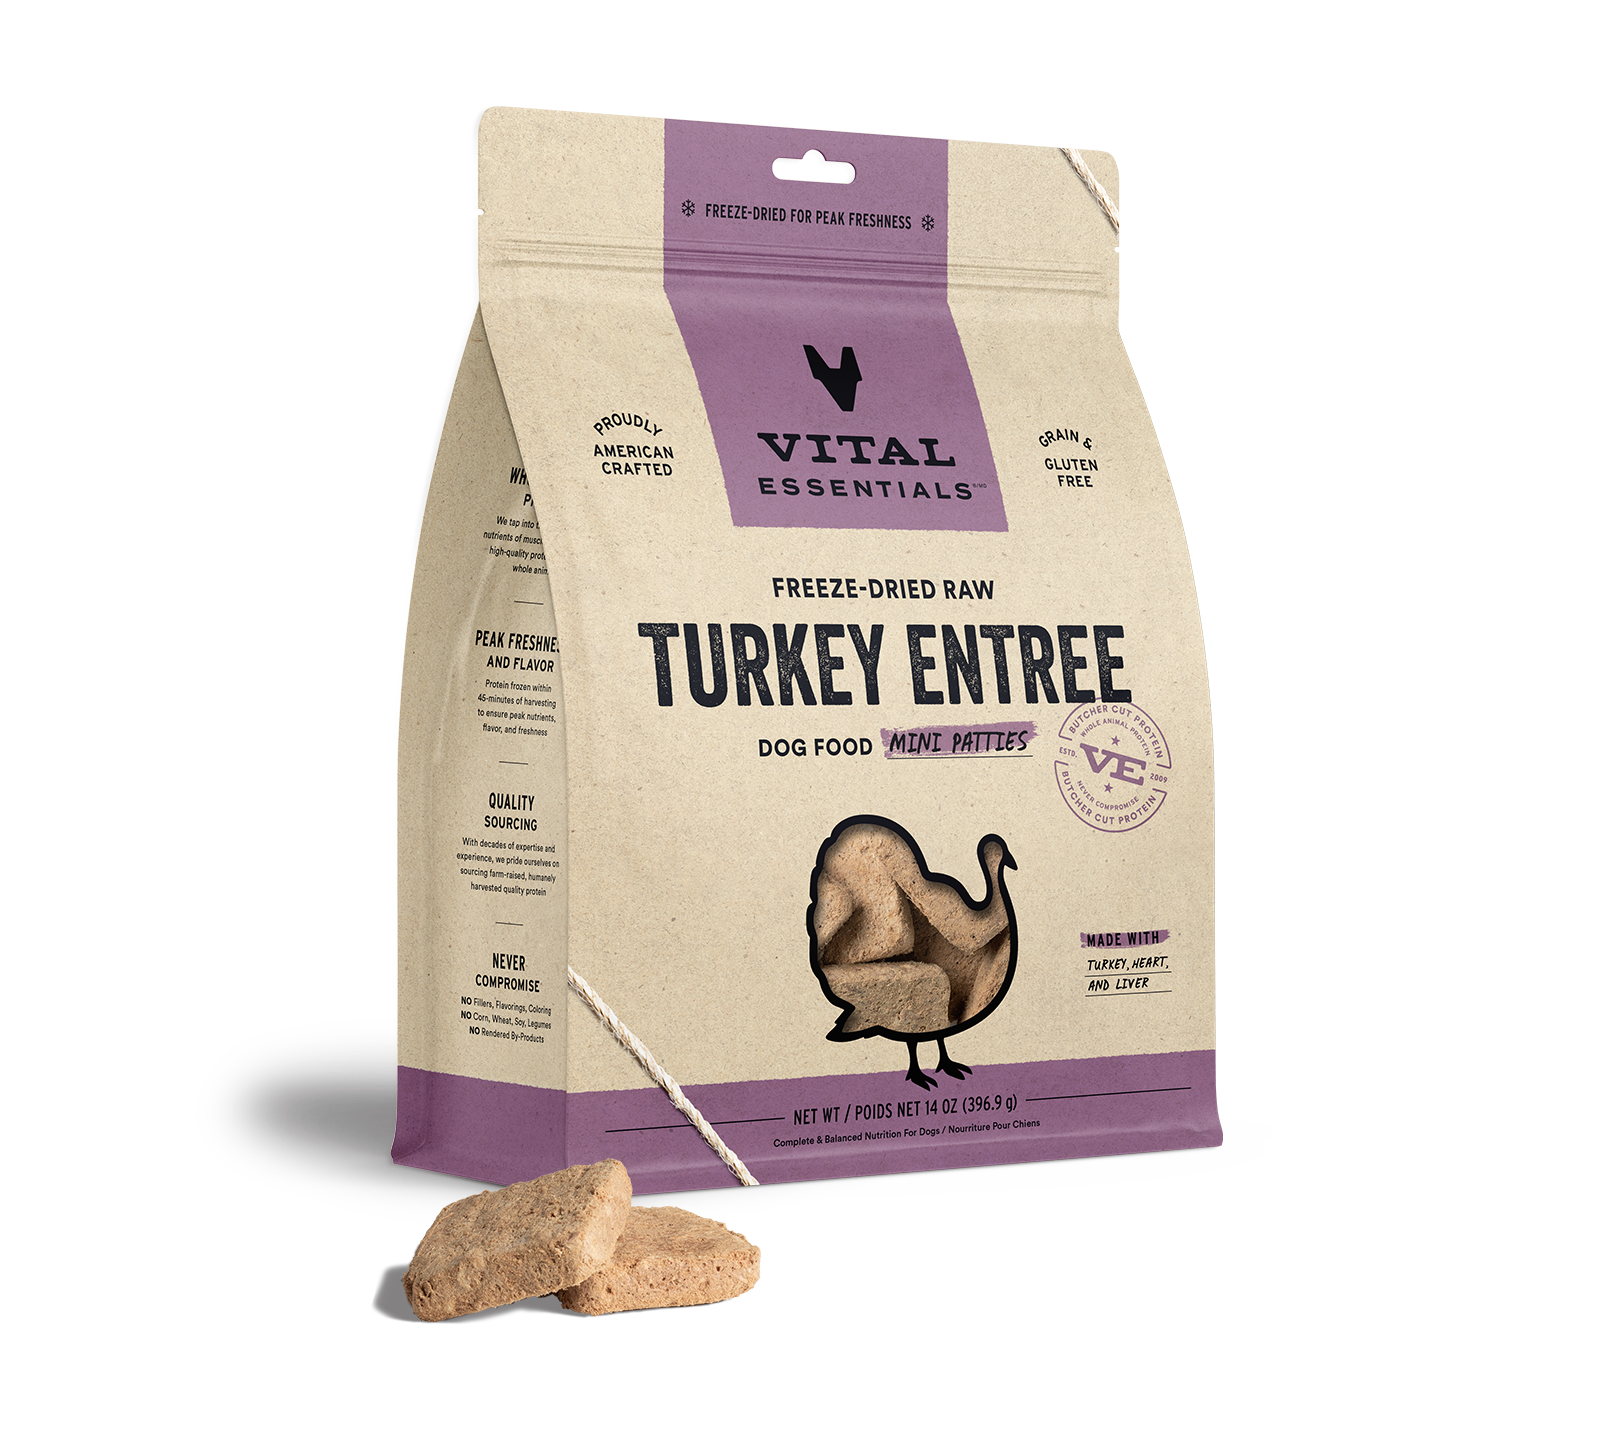 Vital Essentials Freeze-Dried Raw Turkey Entree Dog Food Mini Patties, 14 oz - Healing/First Aid